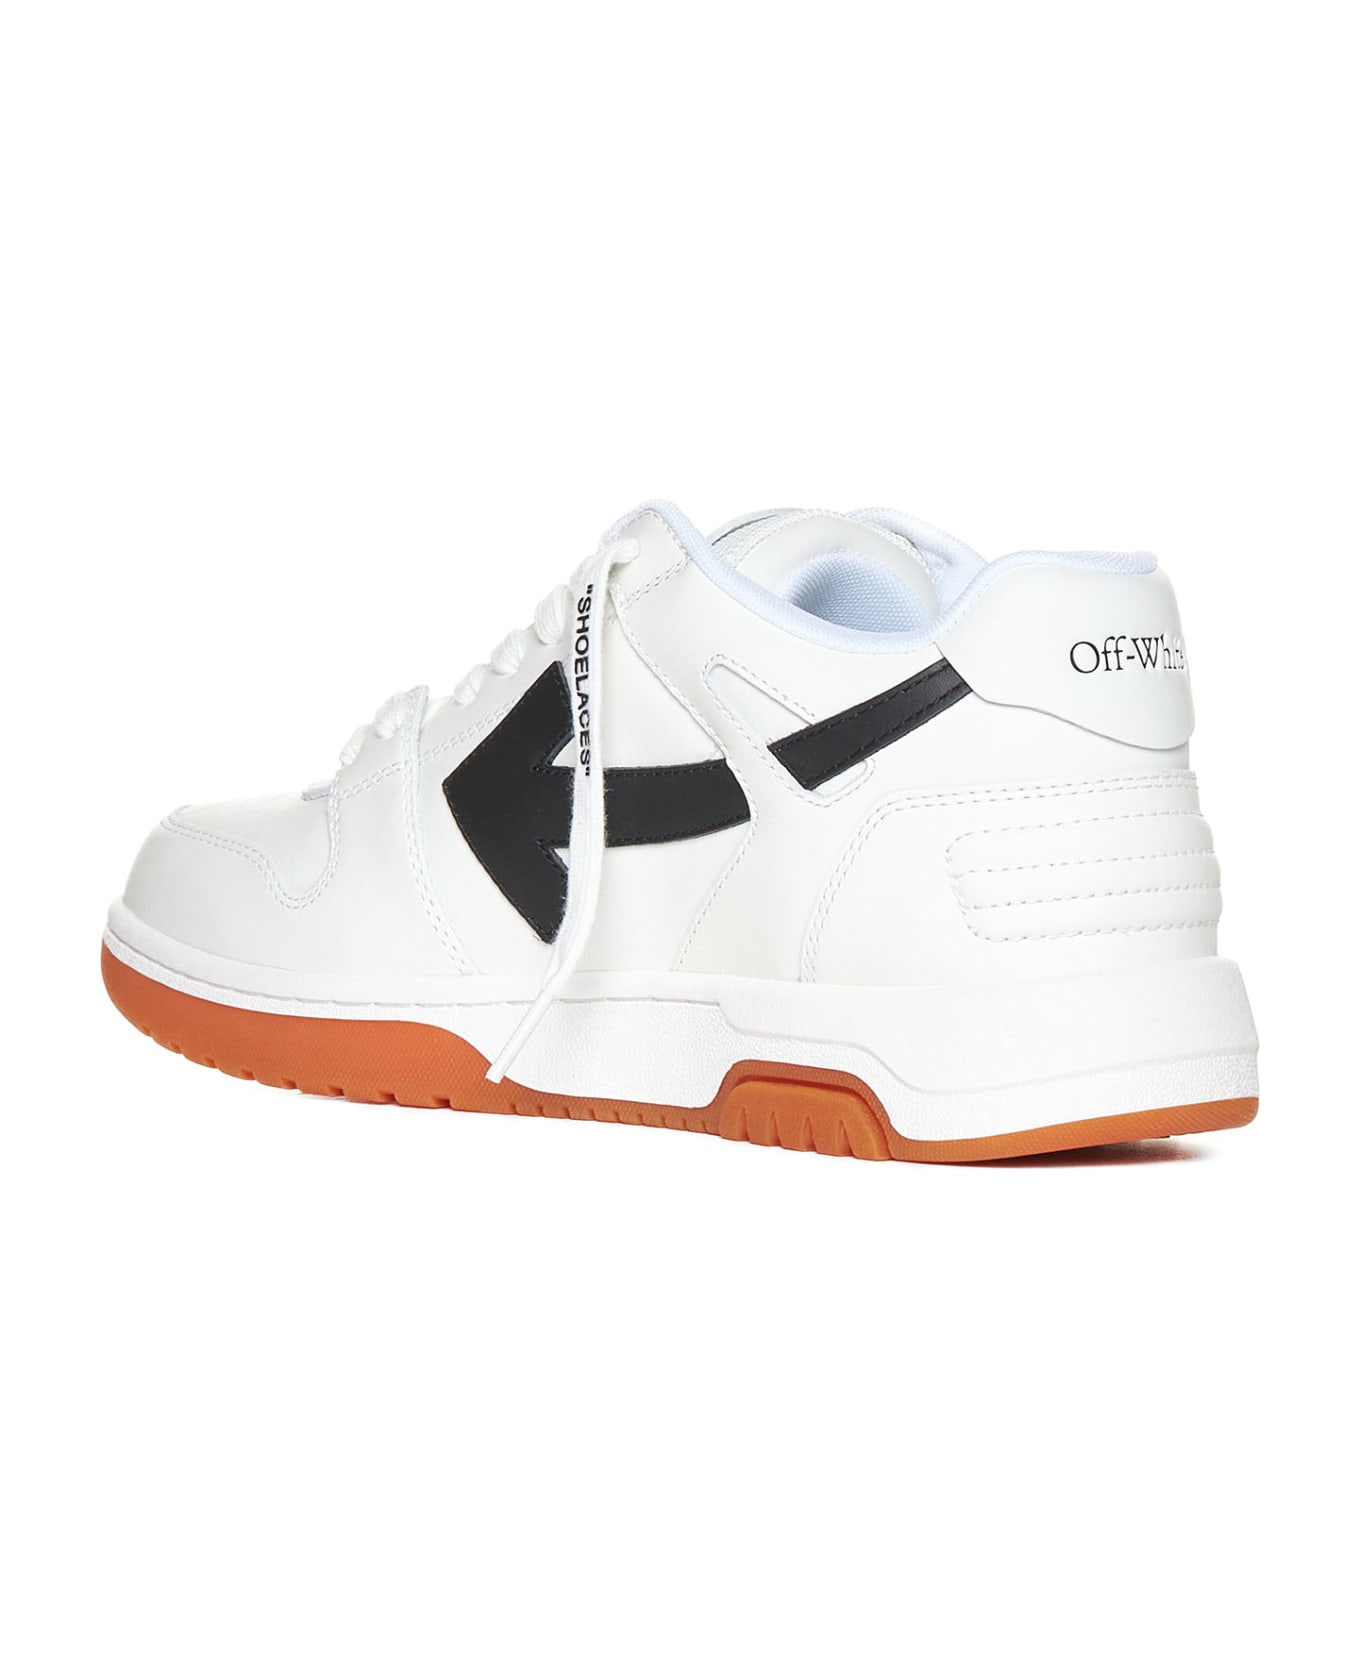 Off-White Sneakers - White BLACK スニーカー